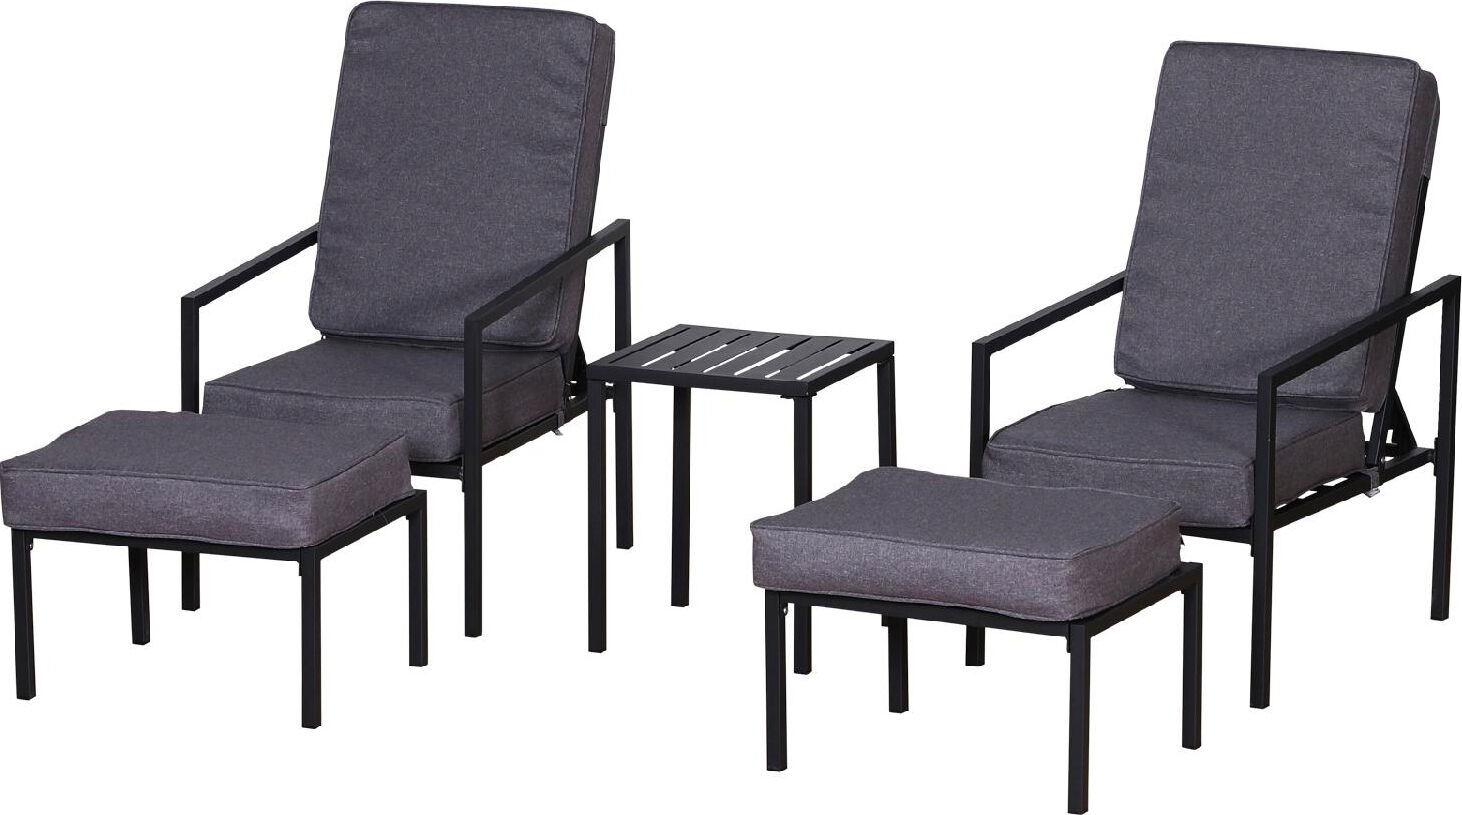 vivagarden 84b358 salotto da giardino set da esterno 5 pezzi con 2 sedie 2 poggiapiedi 1 tavolino colore grigio / nero - 84b358